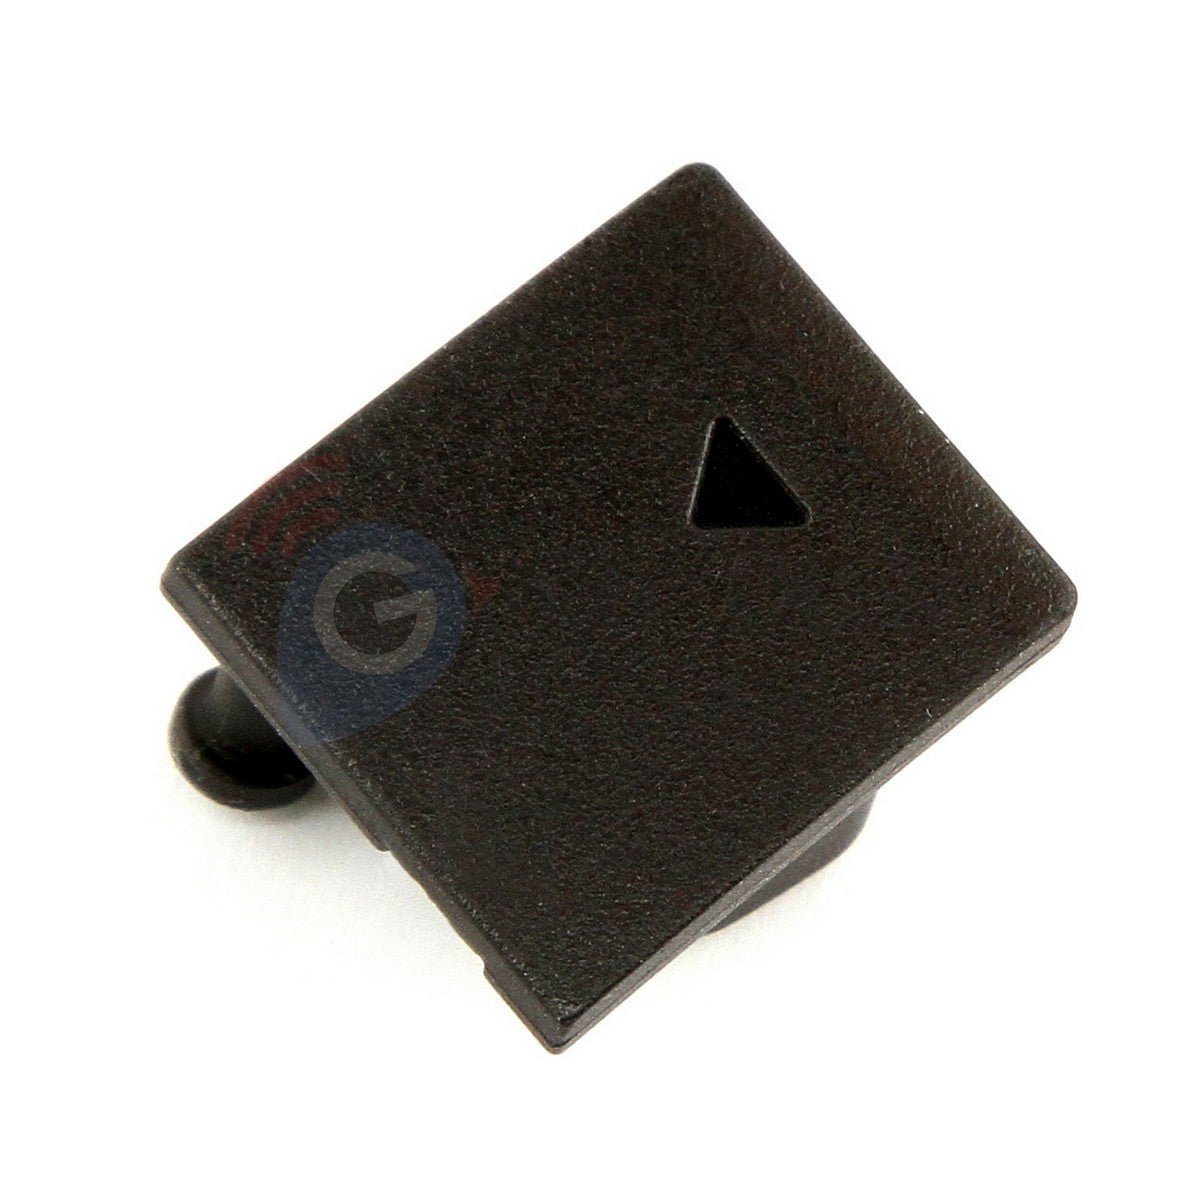 Rubber cap USB Garmin Alpha 200i 200 part repair rubber cover